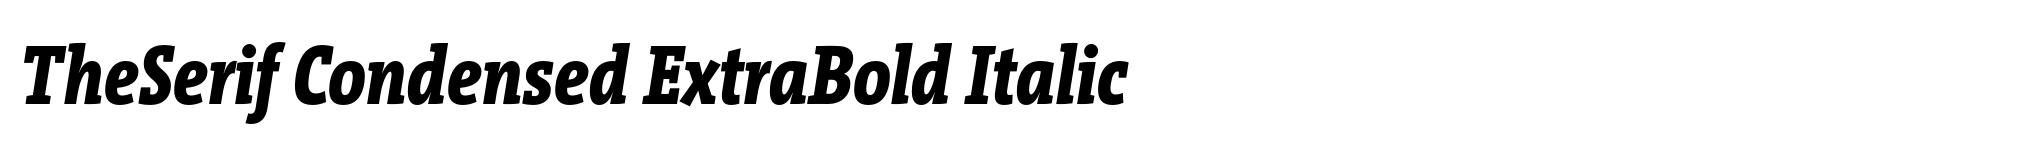 TheSerif Condensed ExtraBold Italic image